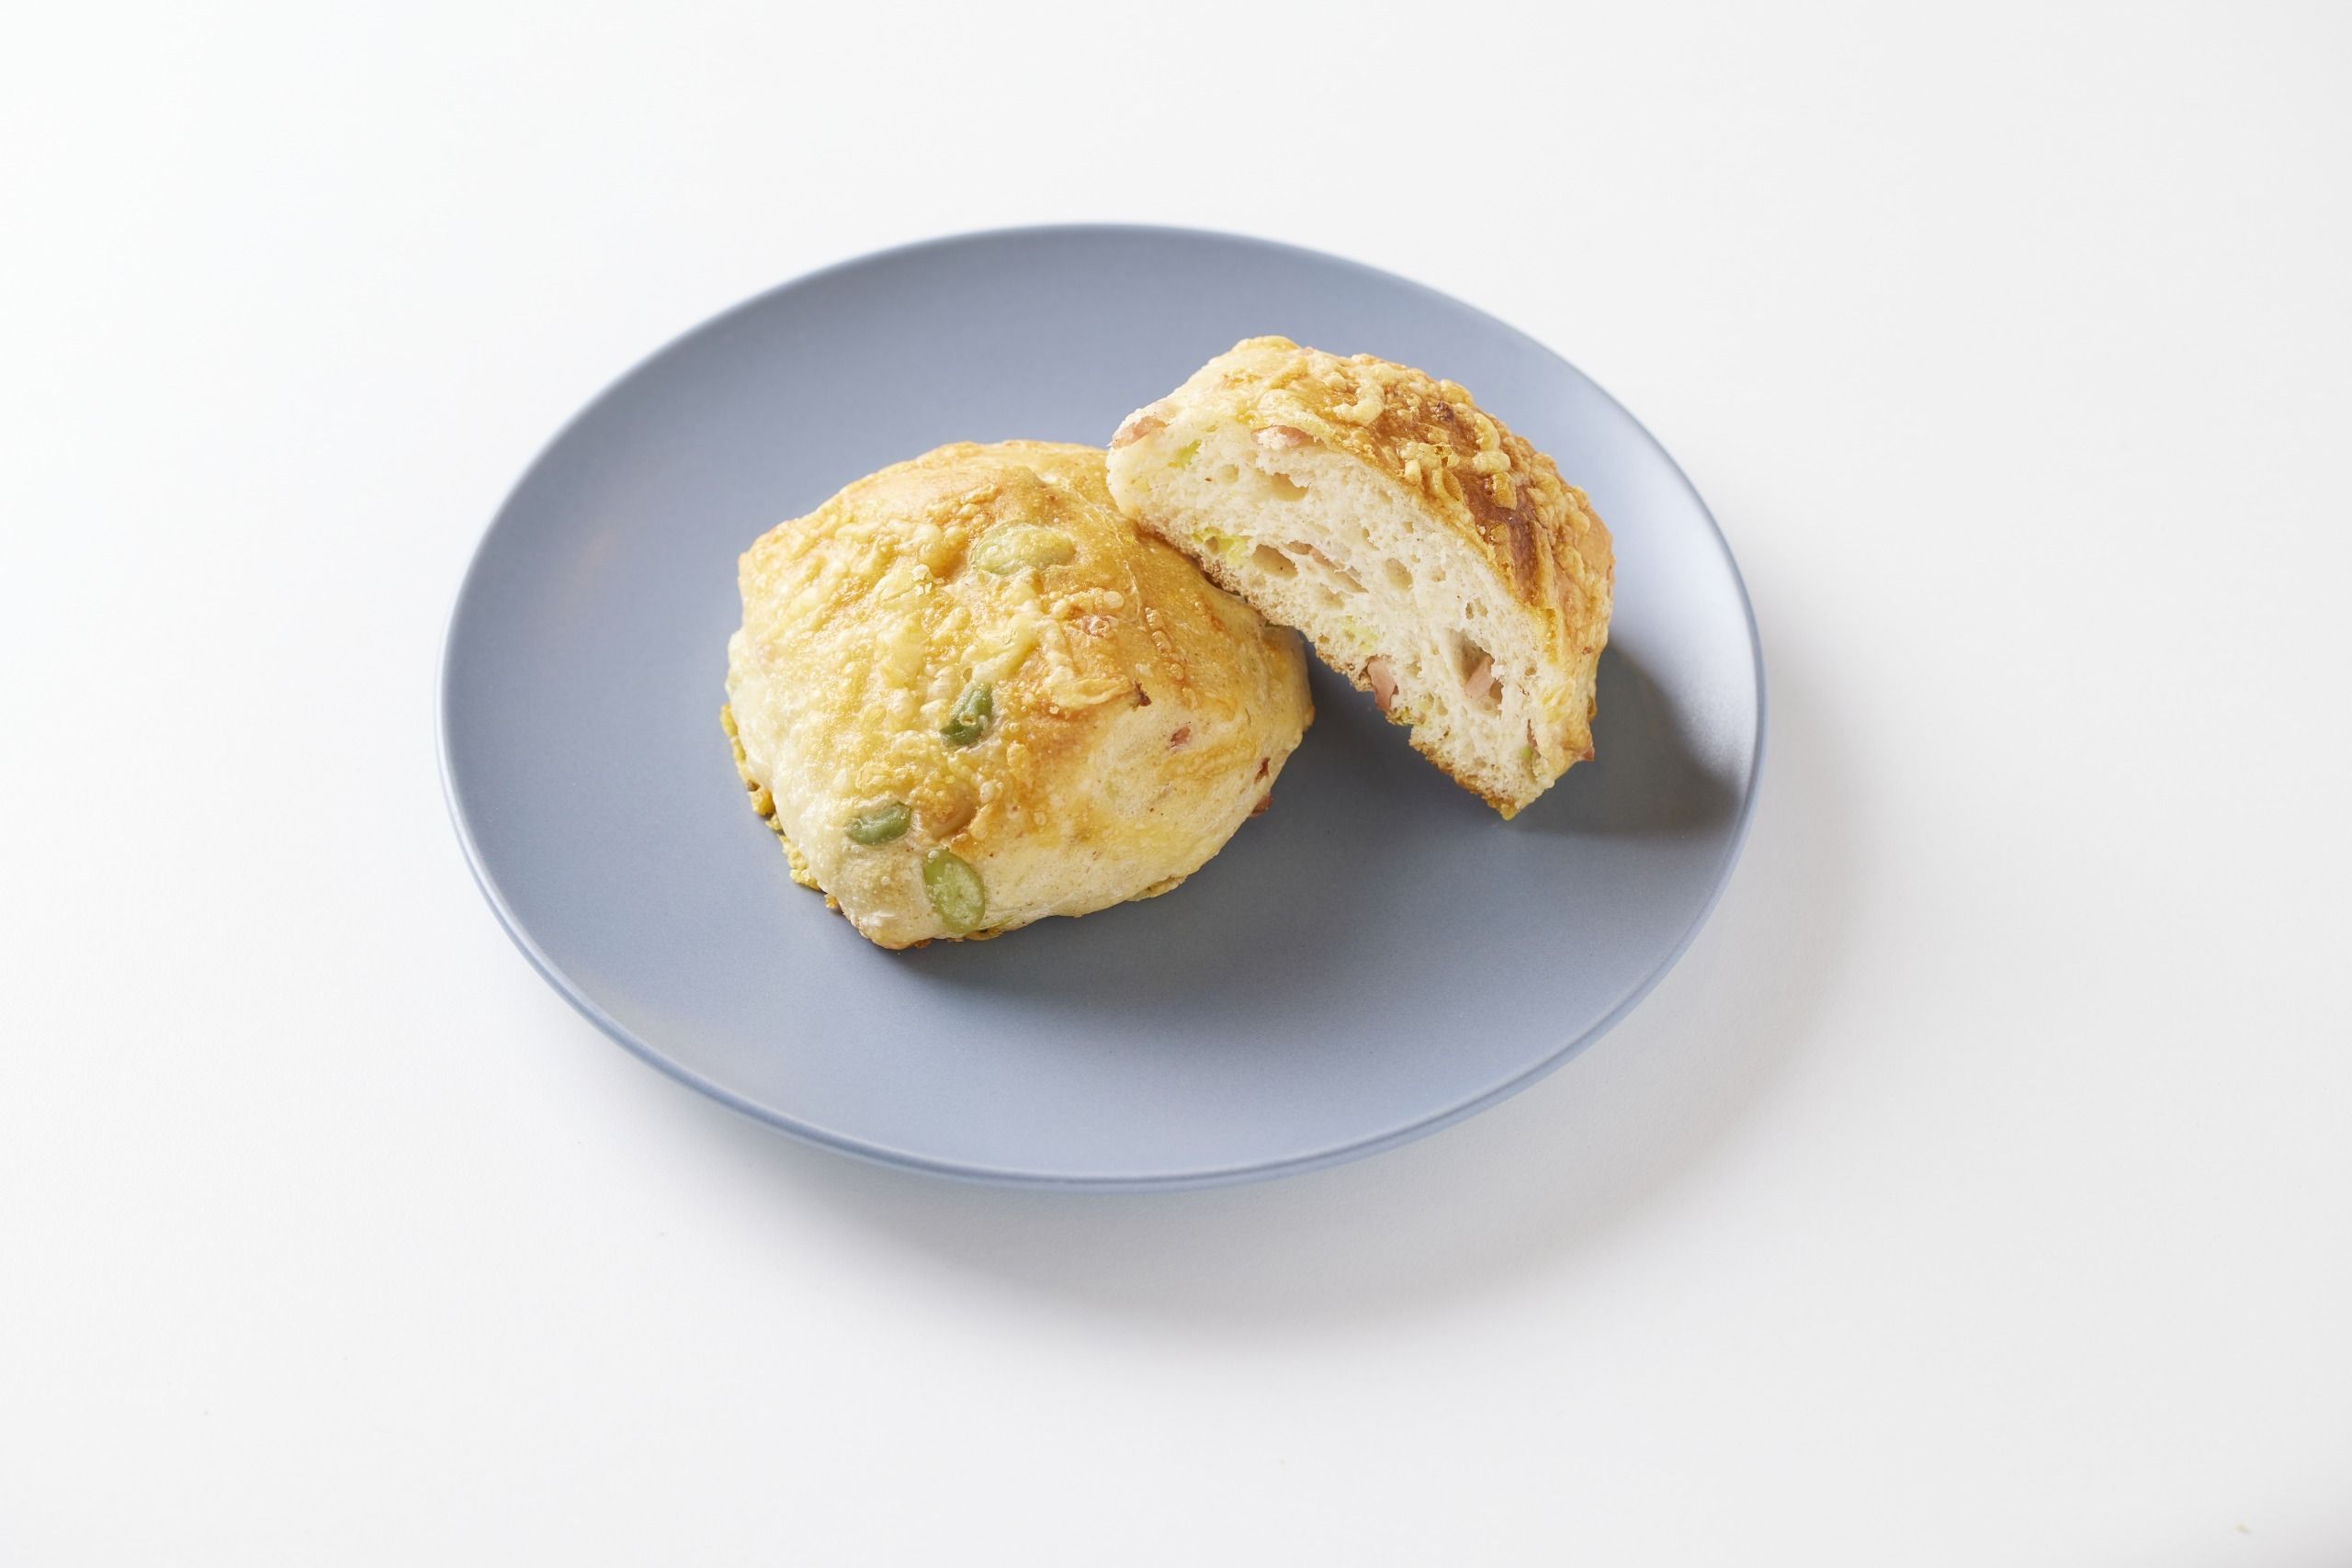 朝から1日の終わりを考えるための朝食パン「ZZZ BREAD(ジー ブレッド）」プロジェクトが開始　#Z世代Pick